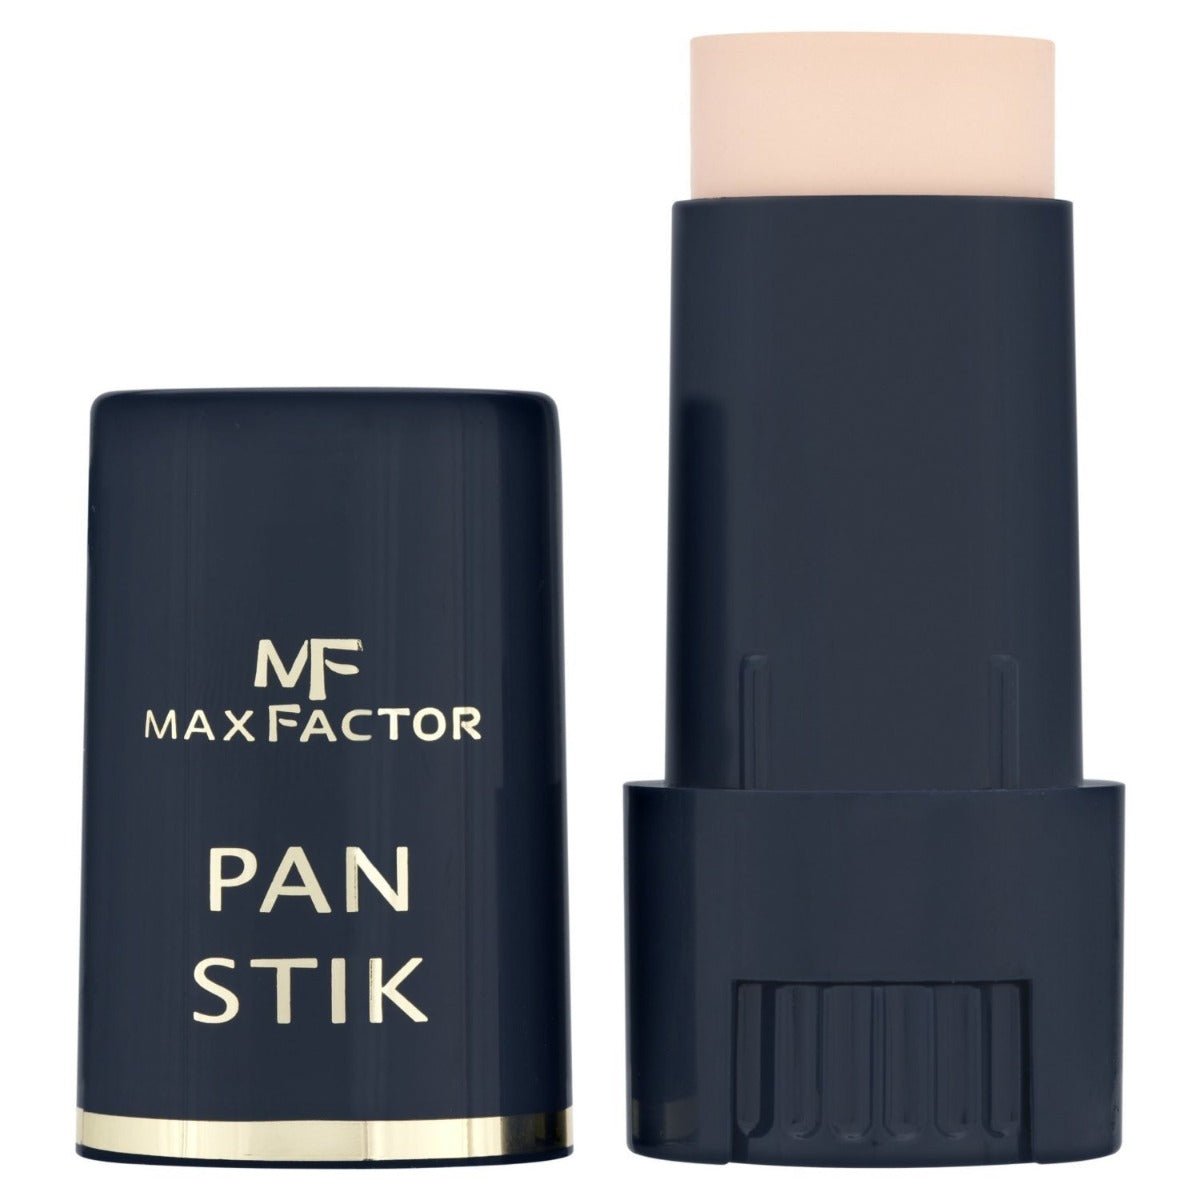 Max Factor- Pan Stik Foundation, 25 Fair, 9 G